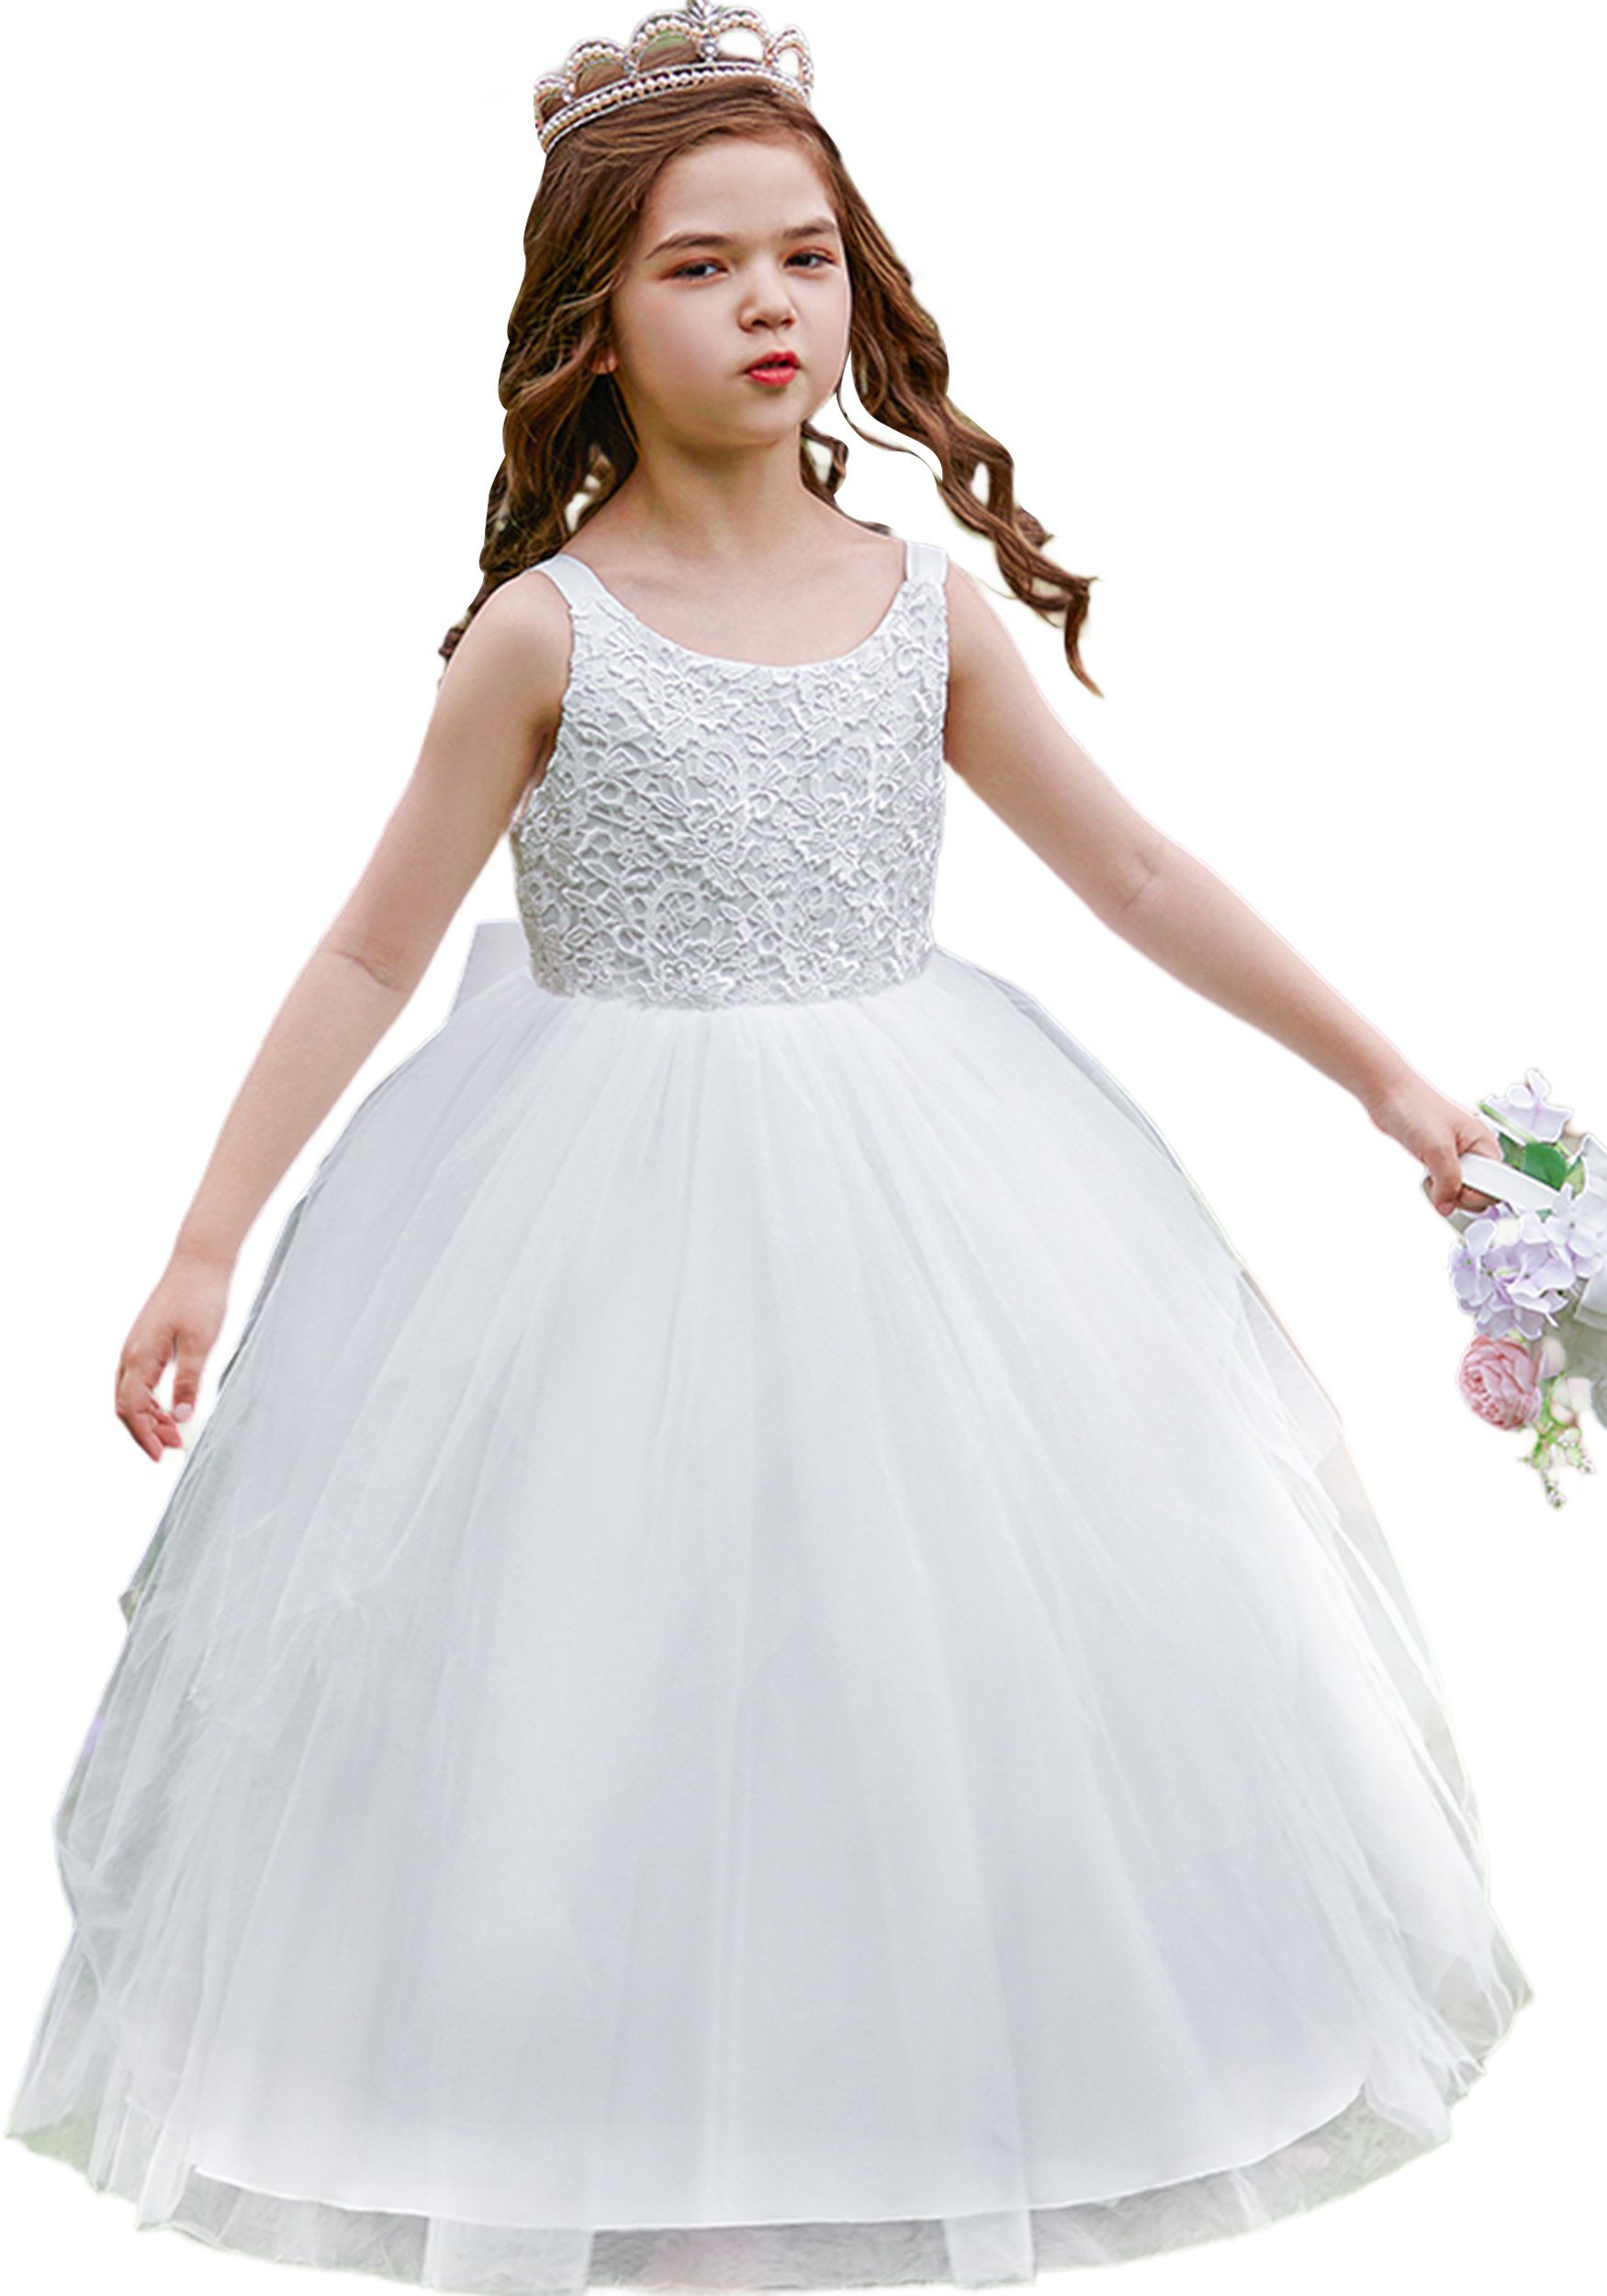 Daisred Partykleid Mädchenkleider Prinzessin Kleidung Performance Kleider Weiß